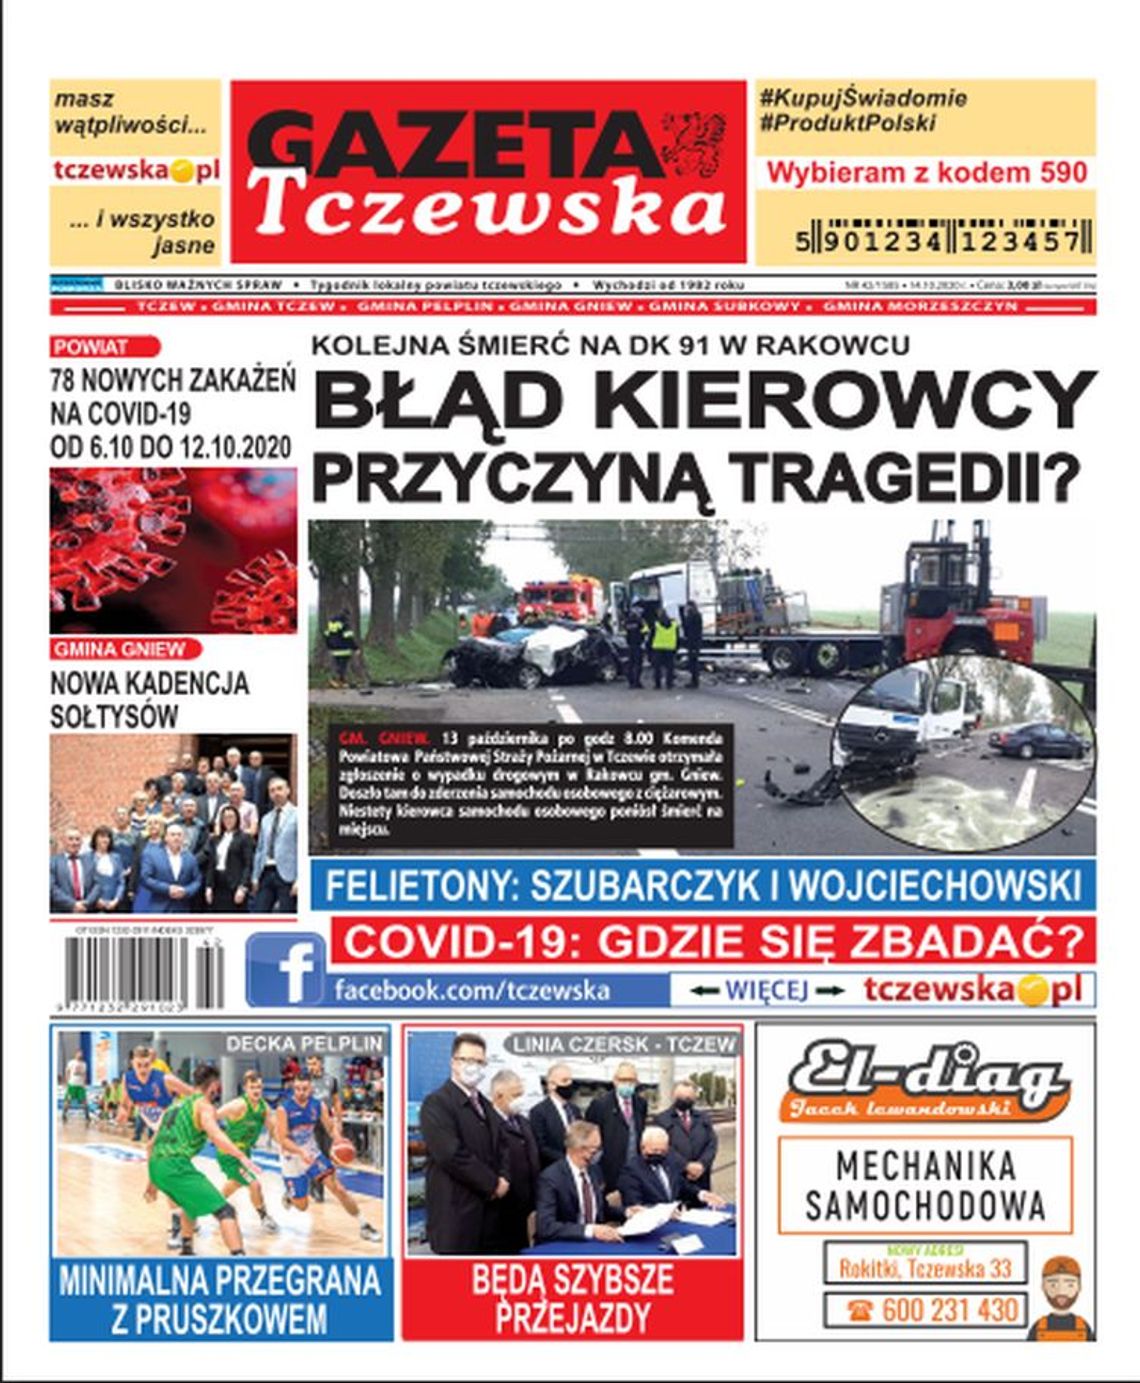 Najświeższe informacje z Tczewa i gmin naszego powiatu! Nowy  numer Gazety Tczewskiej już w sprzedaży!!! Co w środku?